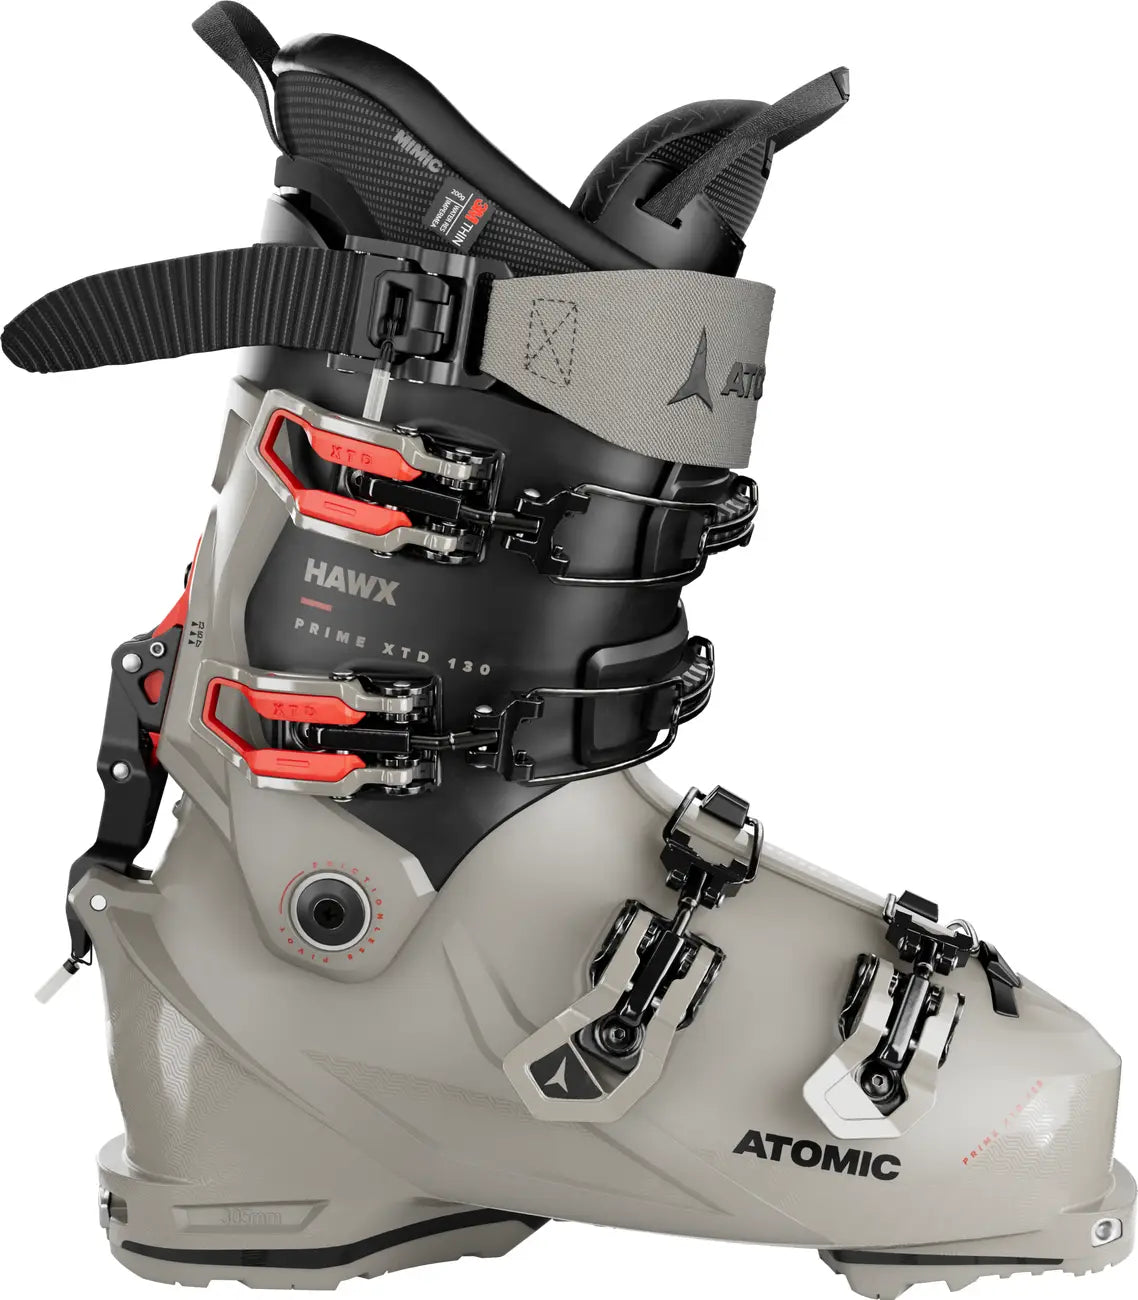 ATOMIC  スキーブーツ  HAWX ULTRA XTD 130  25cmソール調292mm